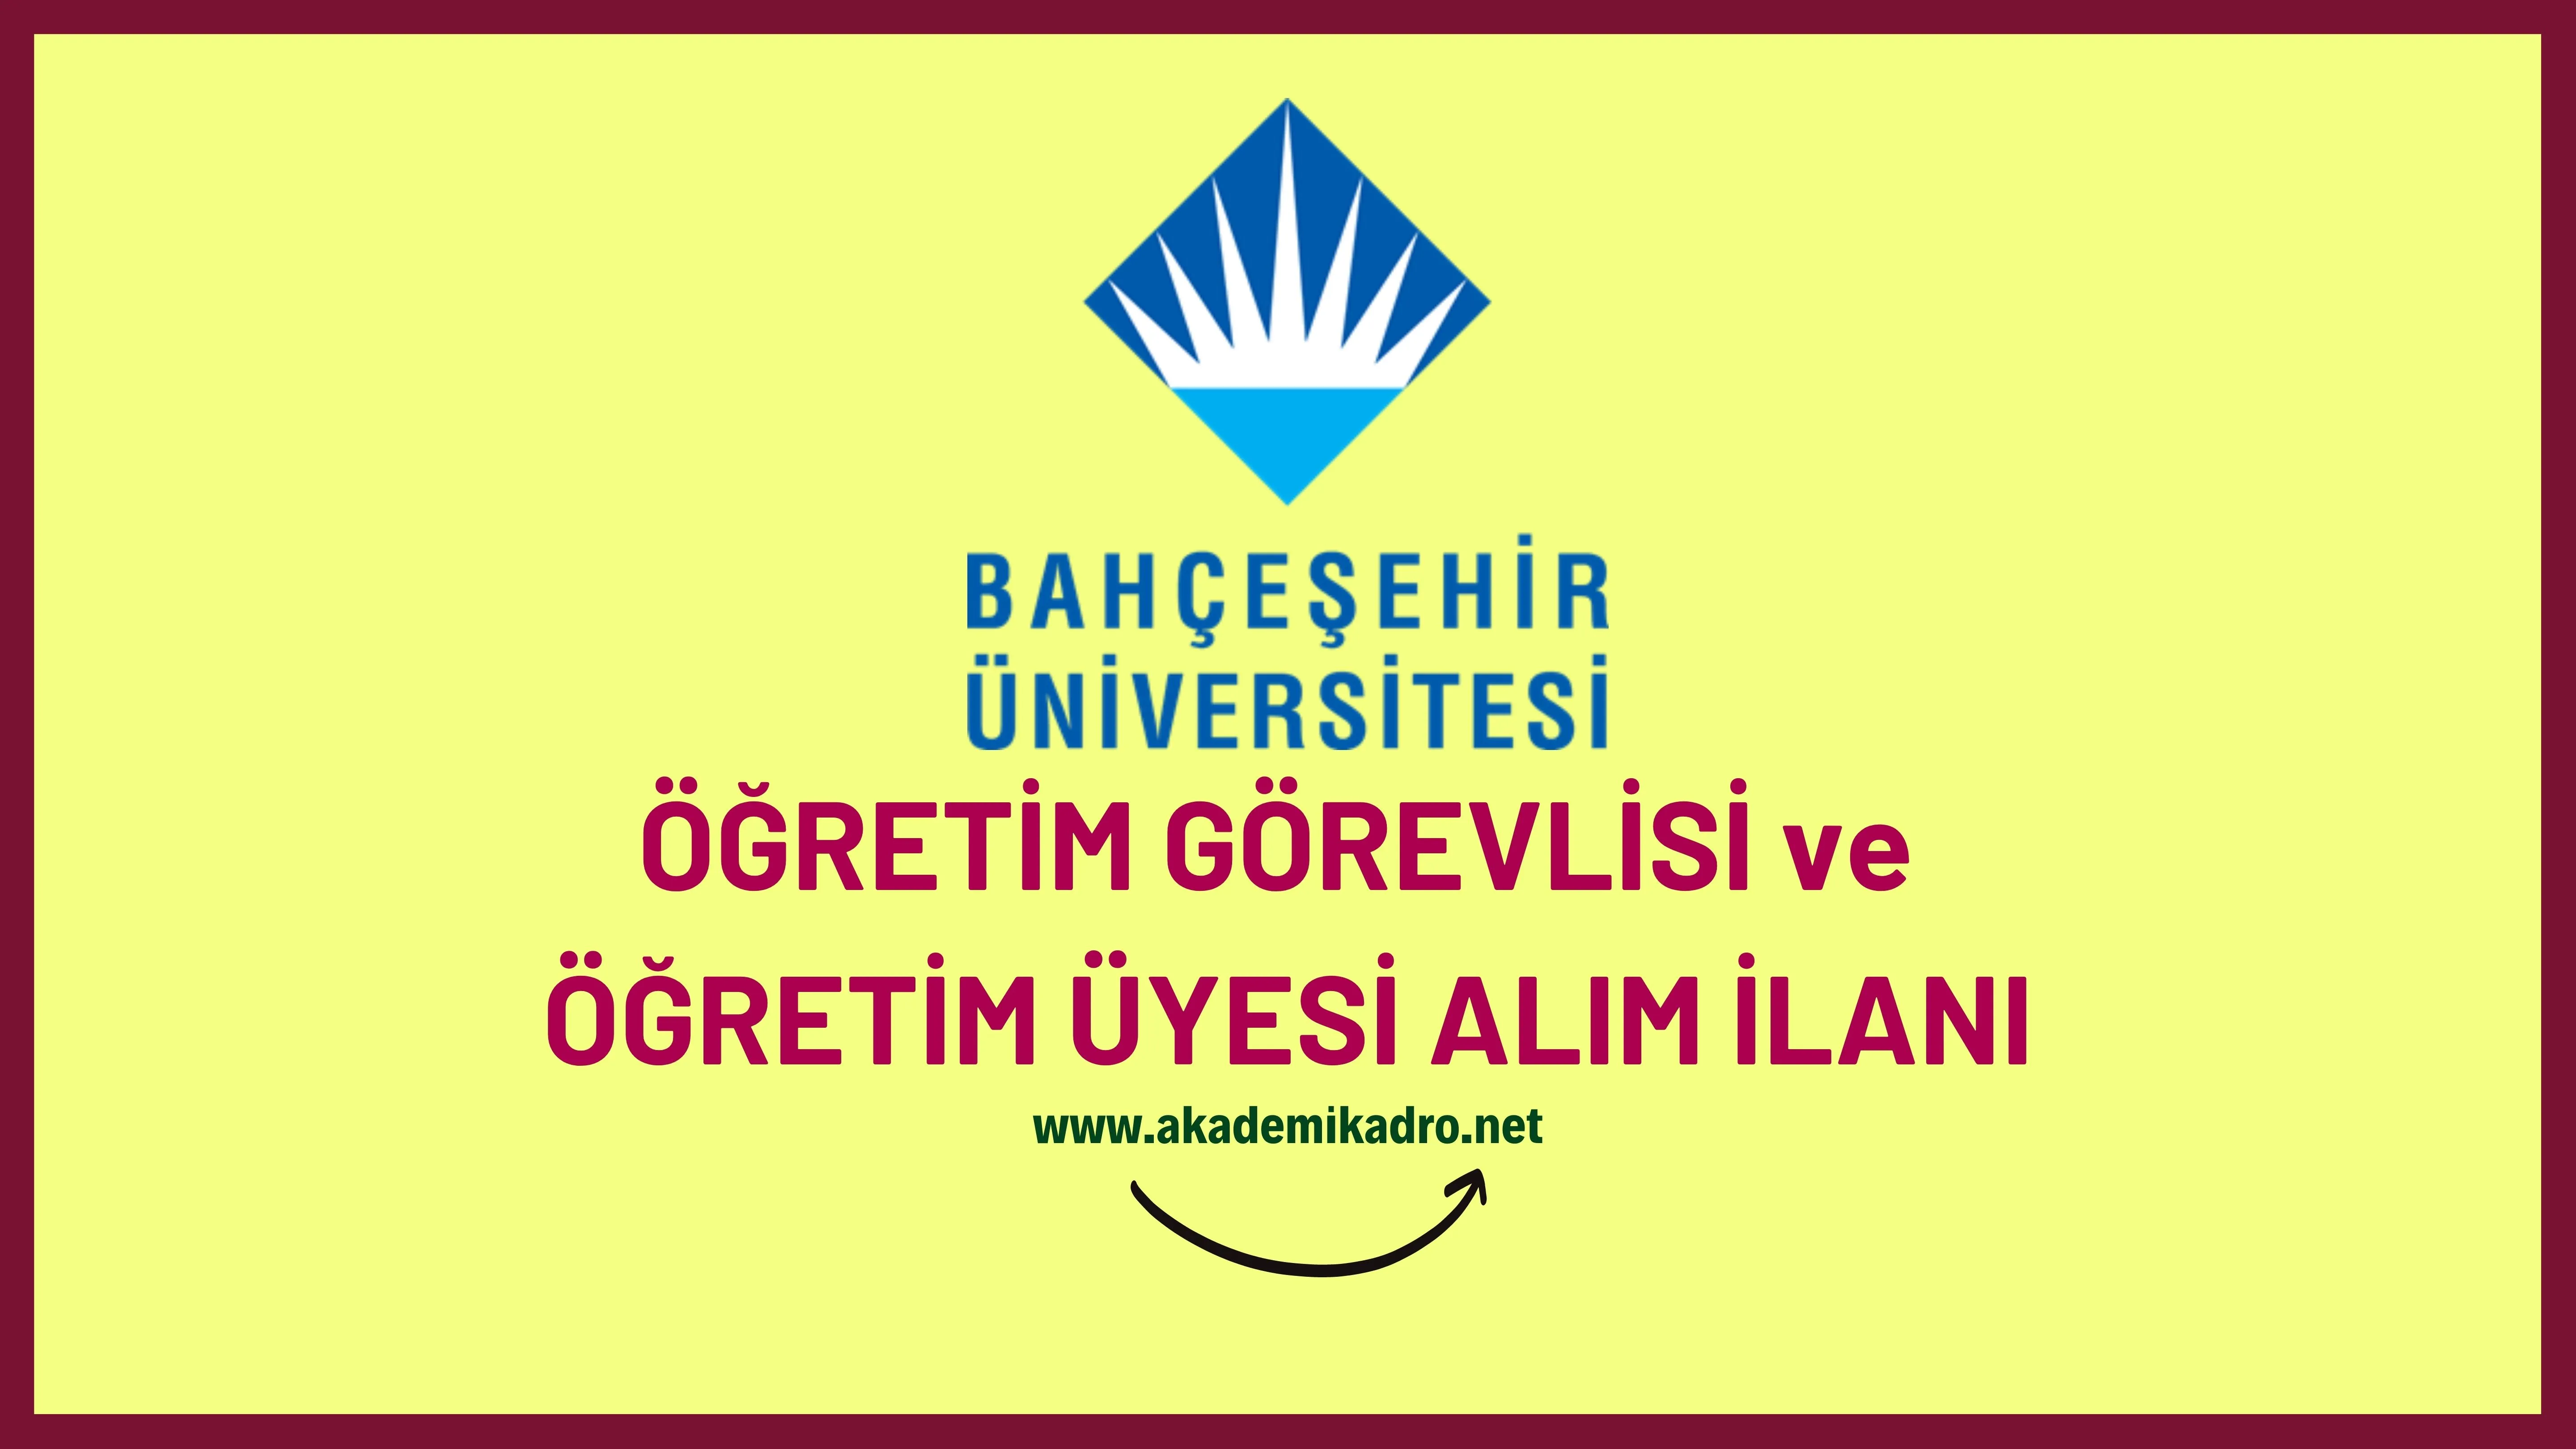 Bahçeşehir Üniversitesi 2 Öğretim görevlisi ve birçok alandan 45 Öğretim üyesi alacak.